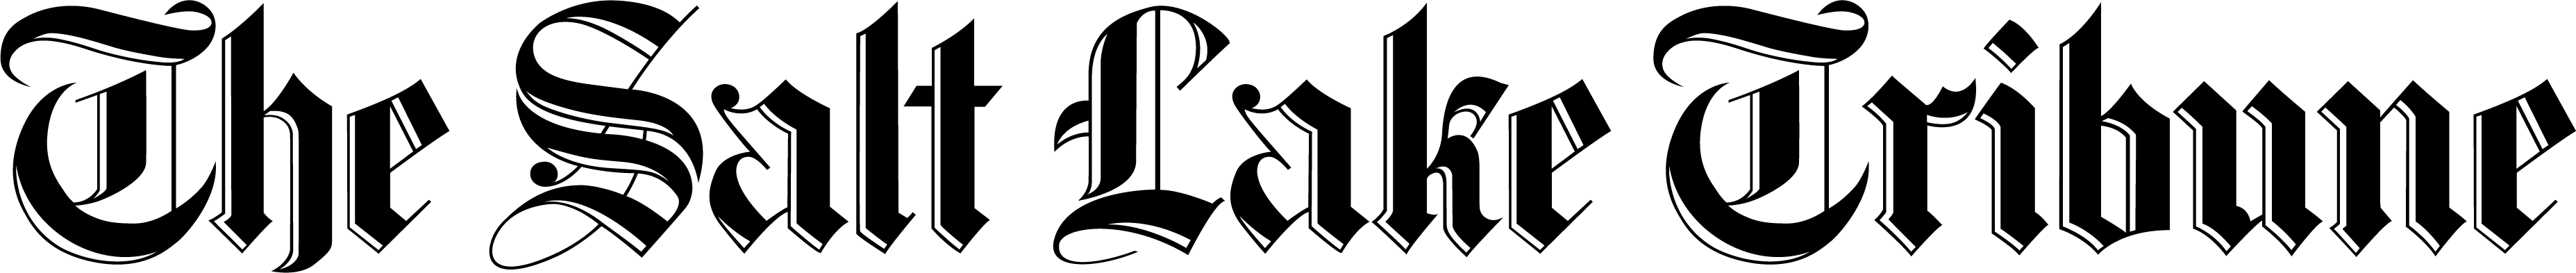 salt lake tribune logo